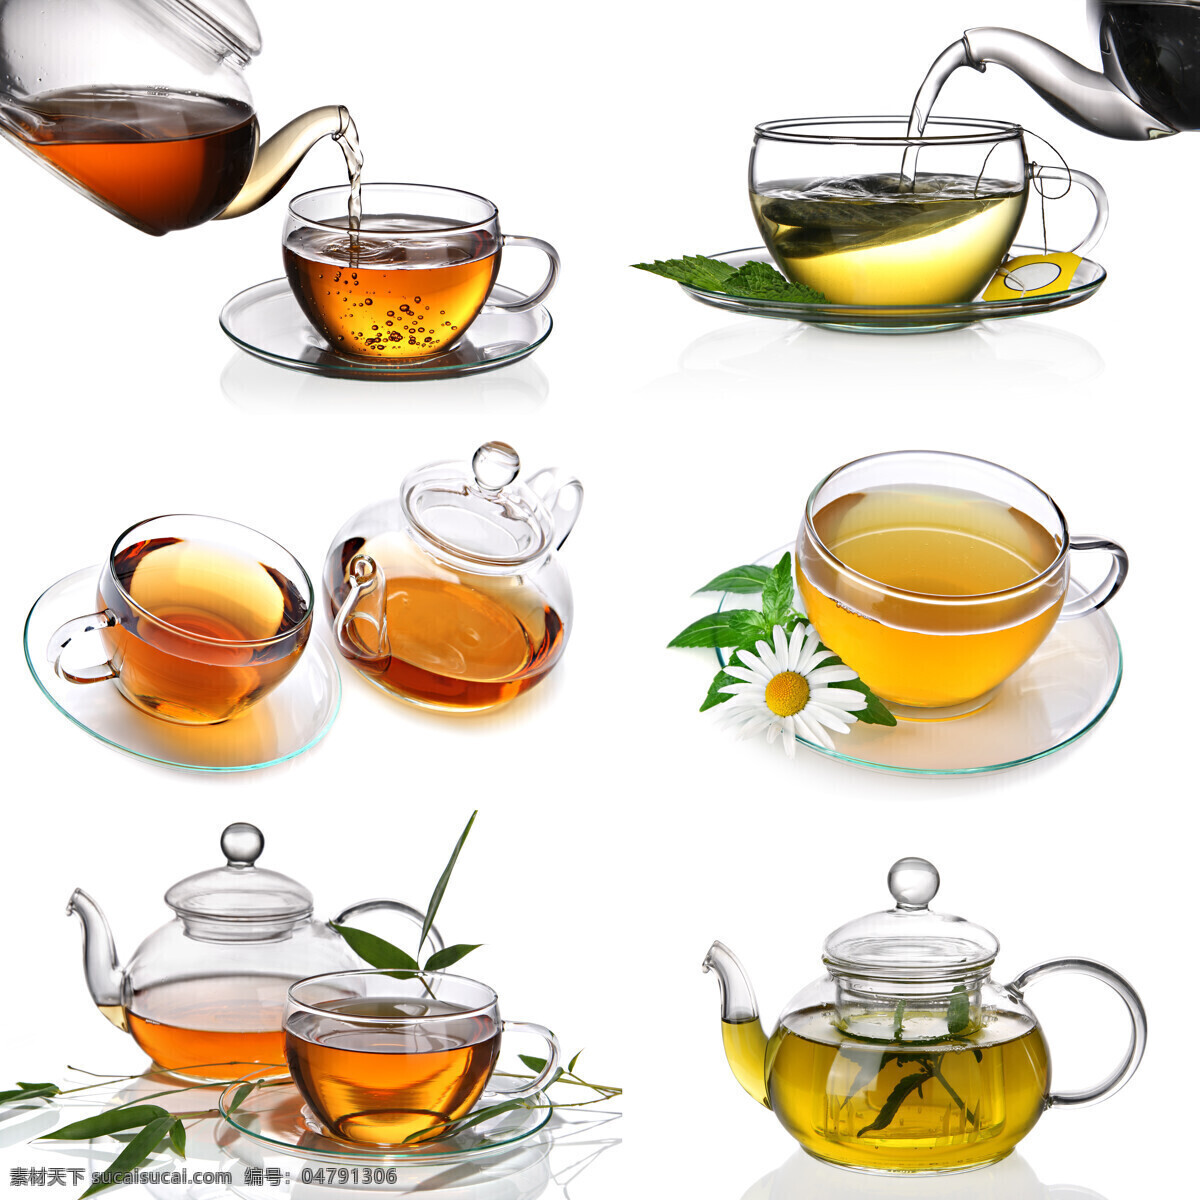 高清茶杯素材 茶杯 茶杯素材 茶杯摄影 茶具 玻璃茶具 生活用品 酒水饮料 餐饮美食 白色